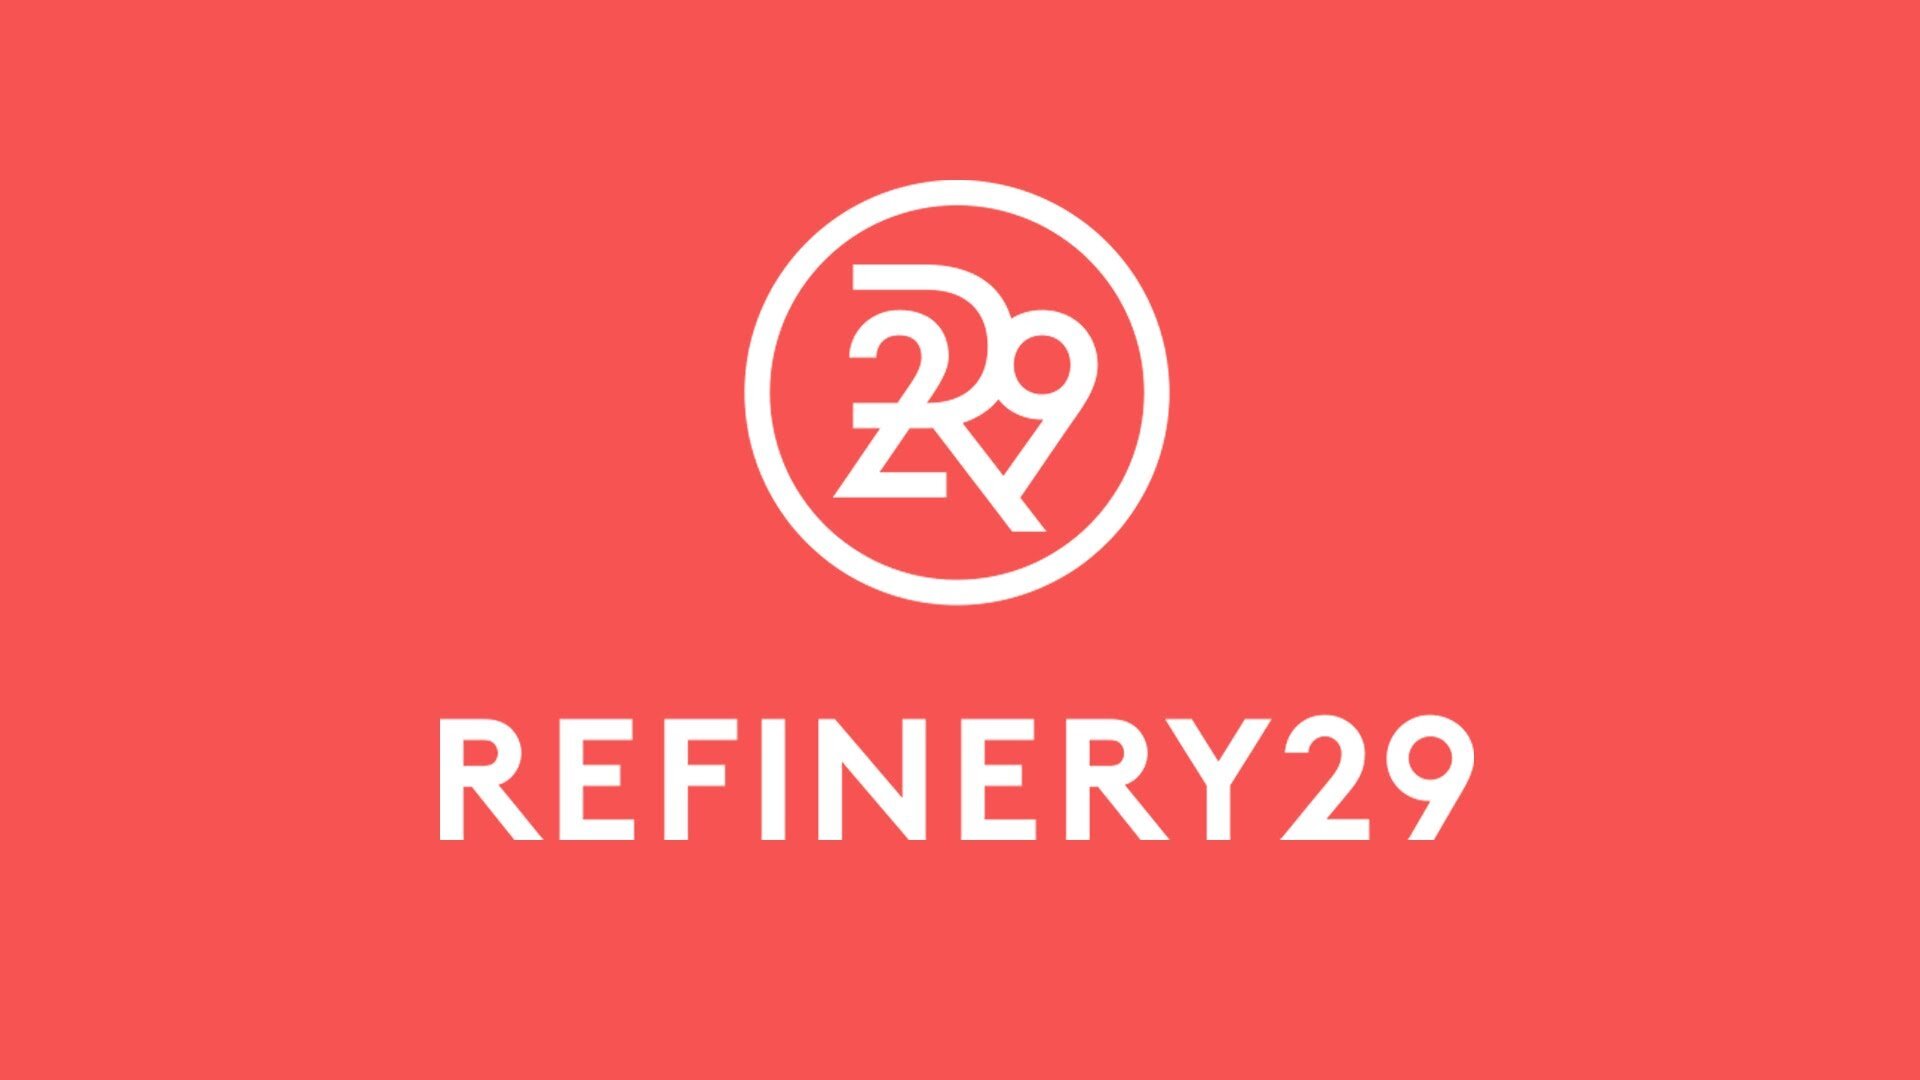 refinery29-logo.jpg